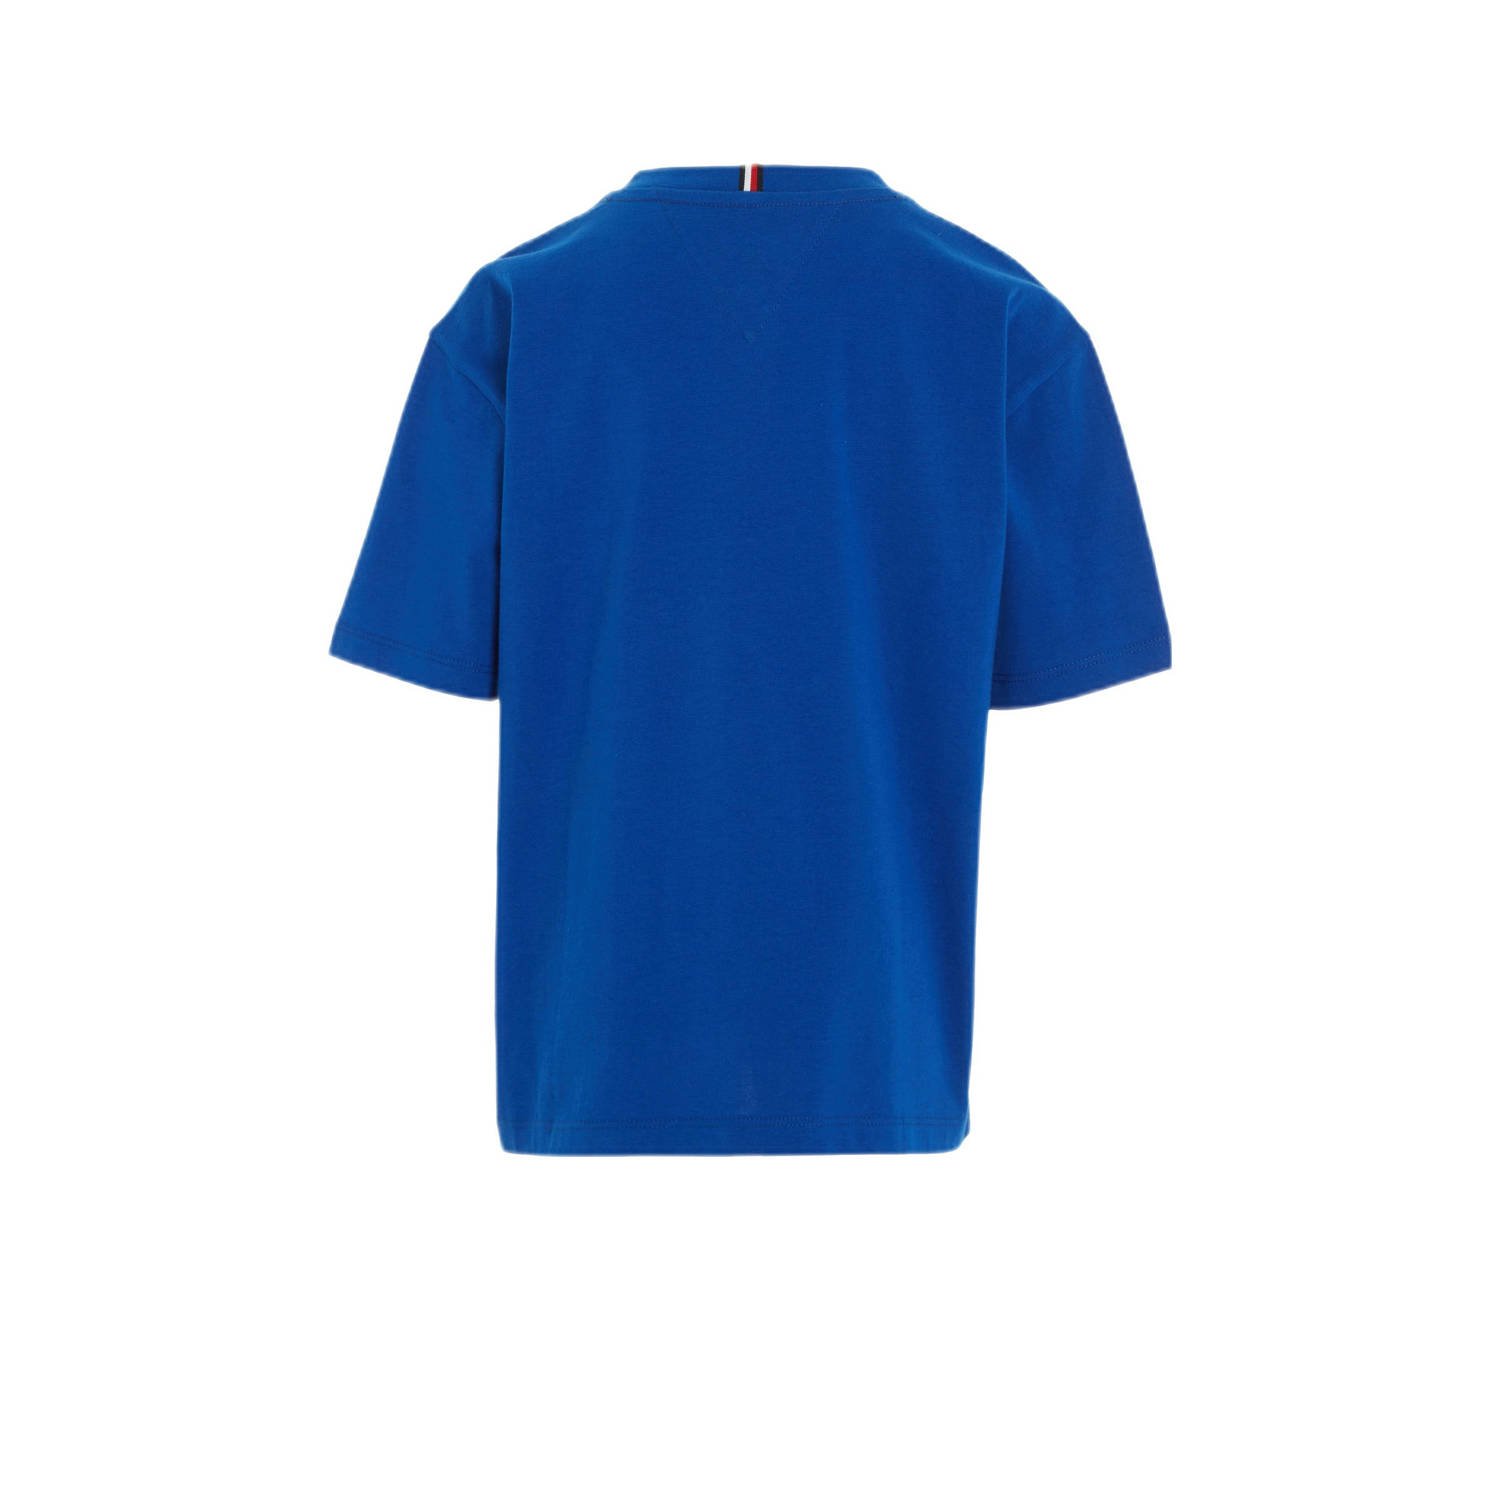 Tommy Hilfiger T-shirt helderblauw